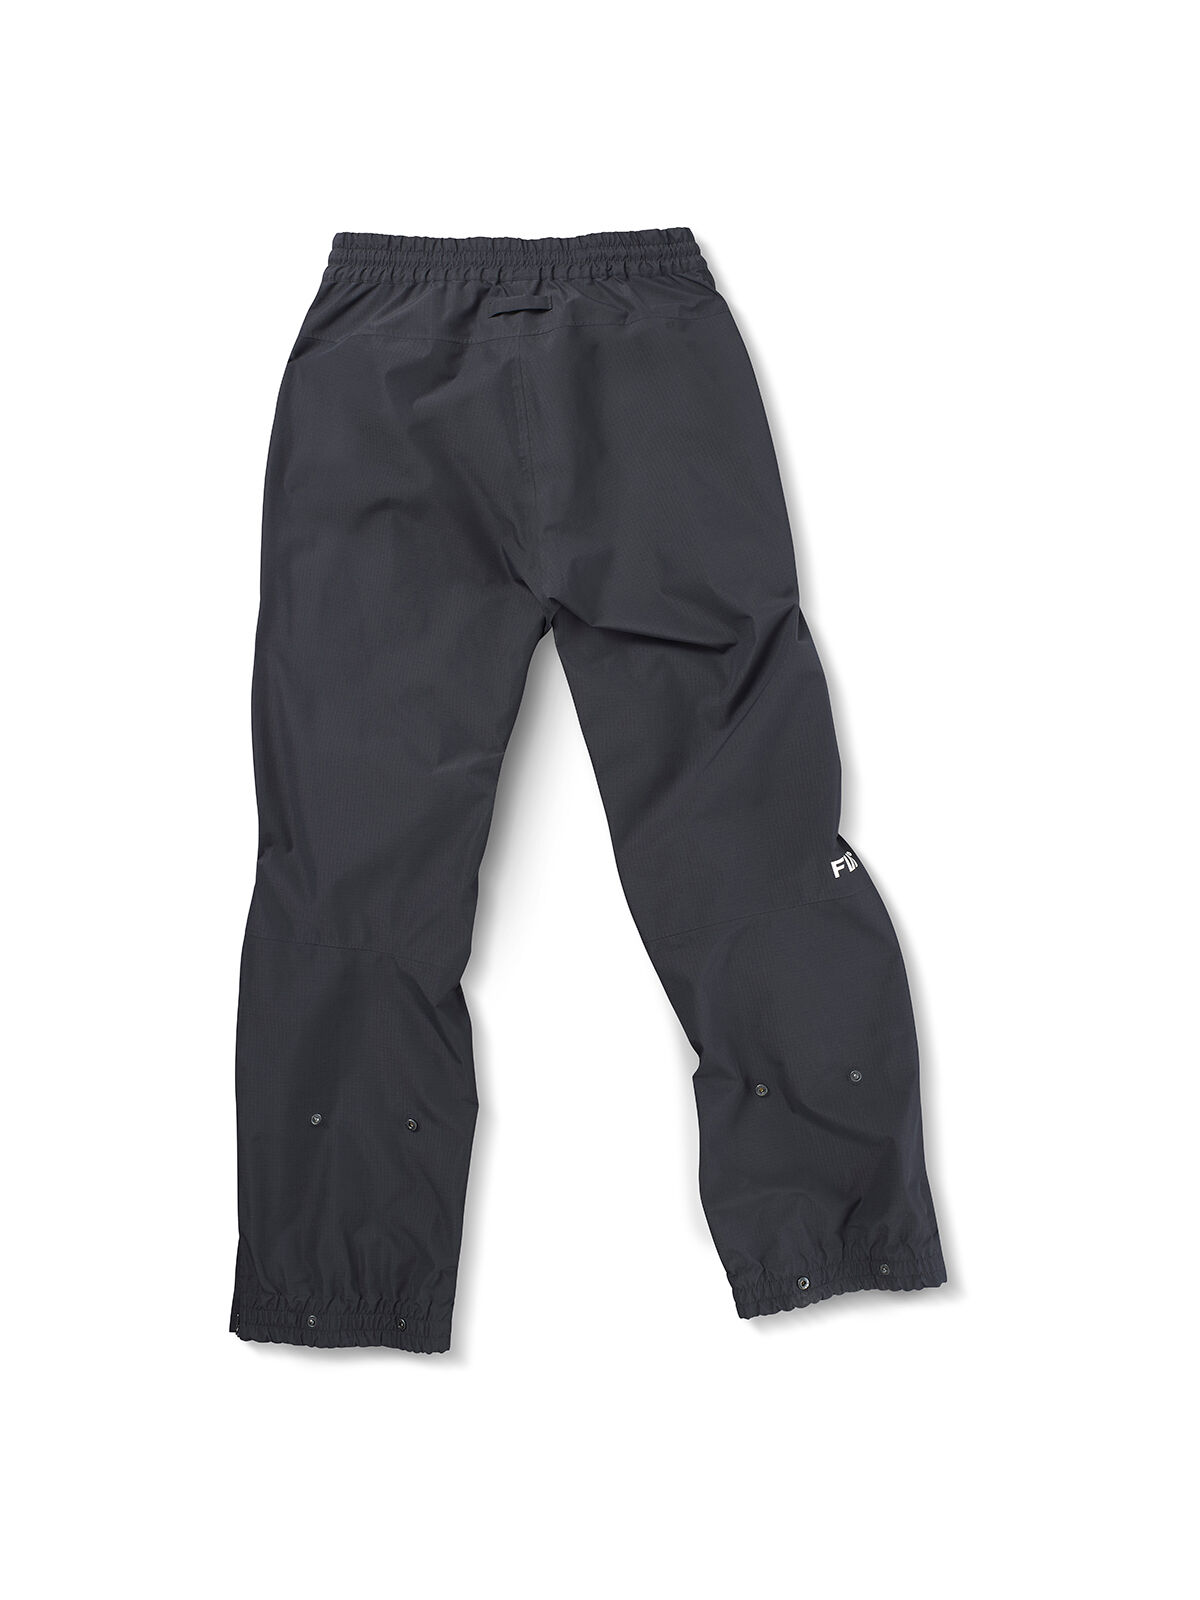 FW Apparel Root Light 2.5L Pant - Pantalón de esquí - Hombre